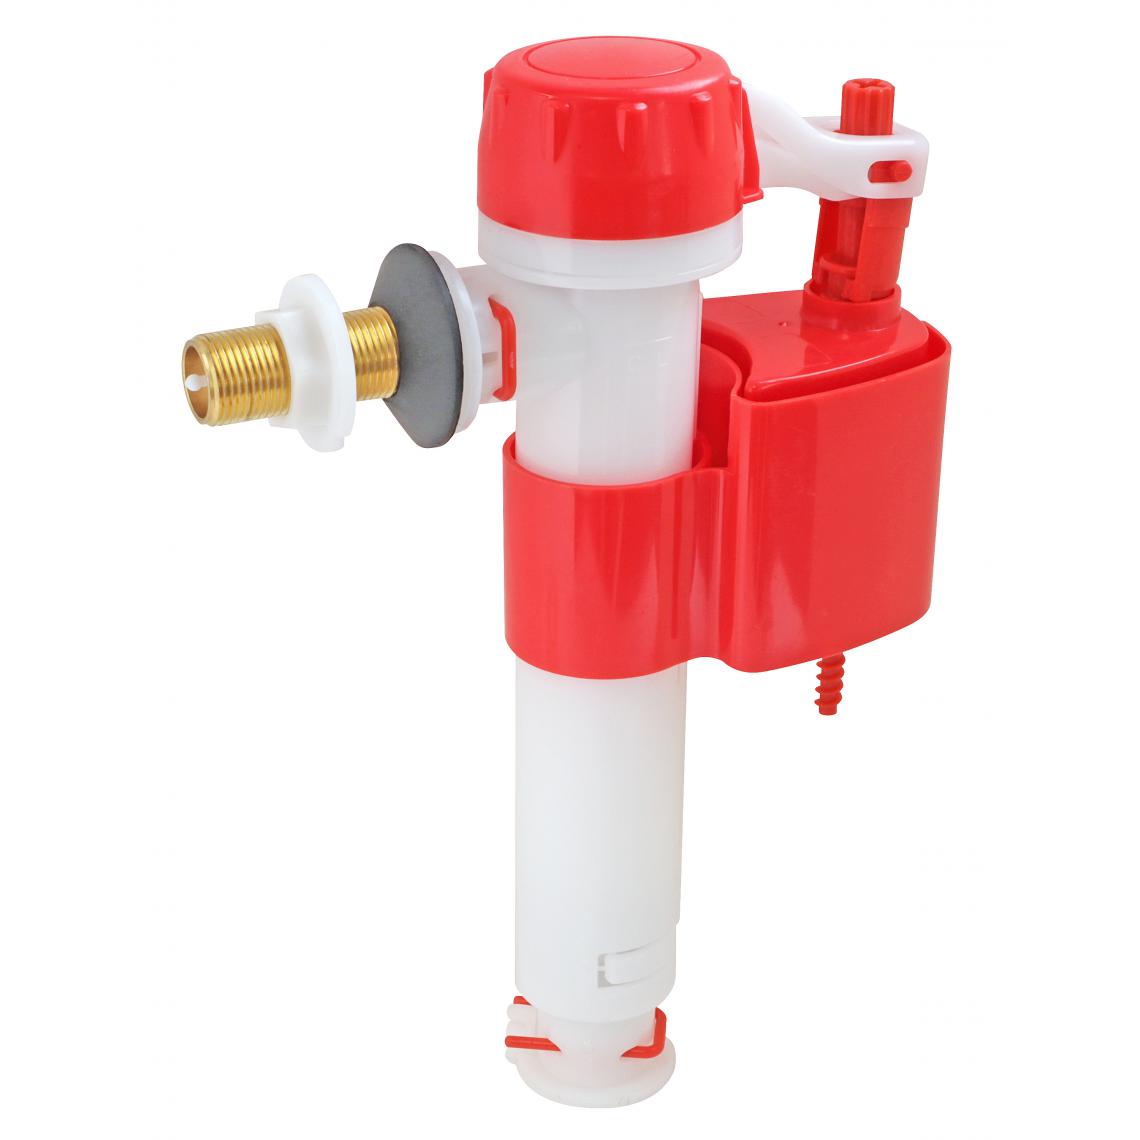 Somatherm For You - Robinet flotteur réversible pour alimentation WC - Raccord laiton M12/17 (3/8") - Chasse d'eau